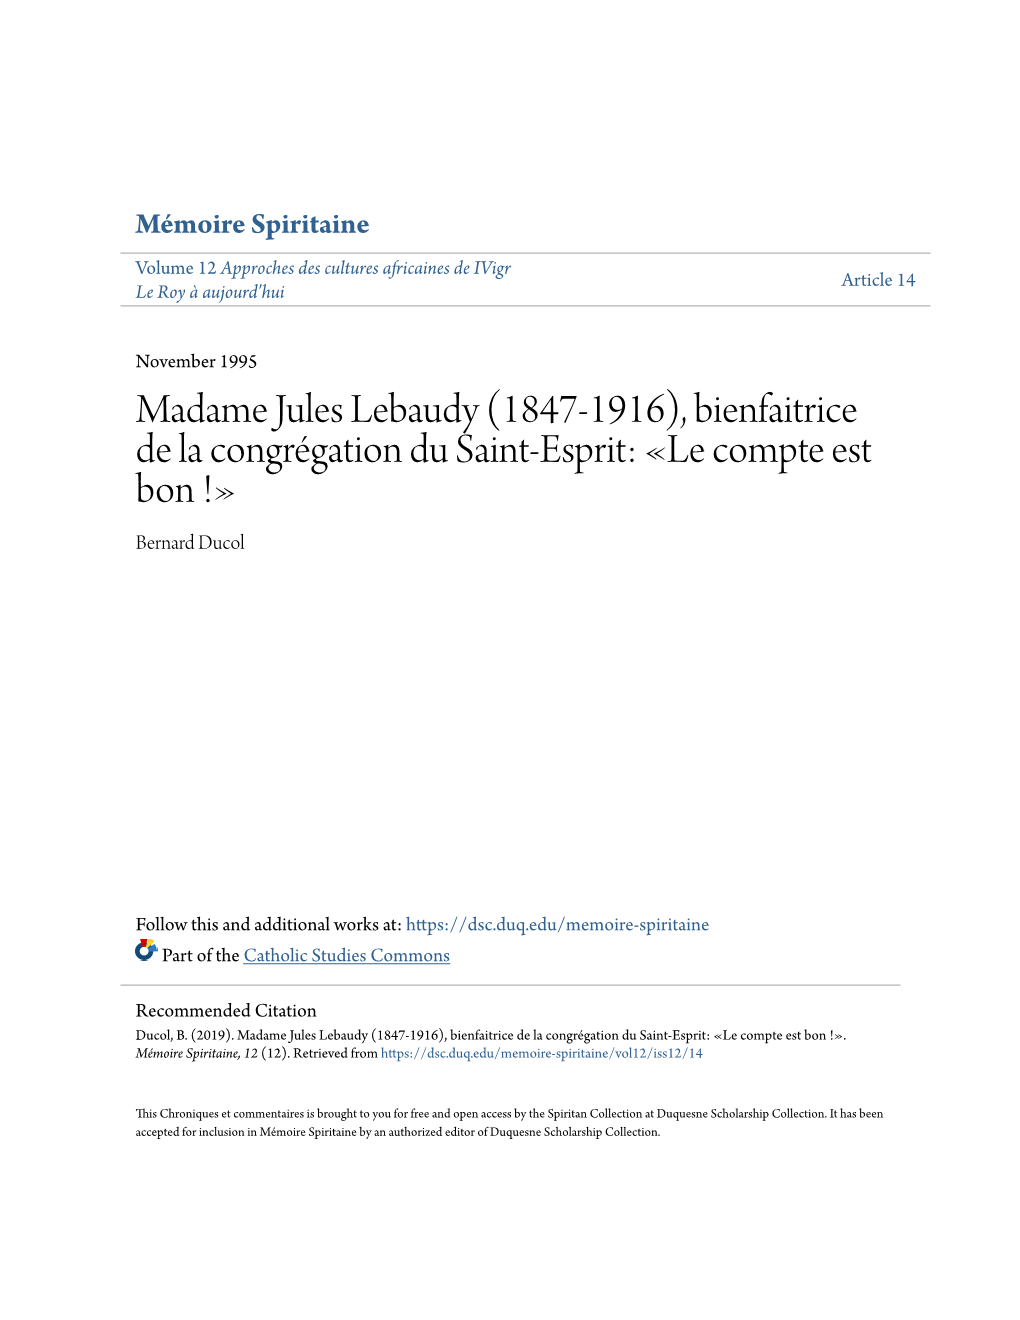 Madame Jules Lebaudy (1847-1916), Bienfaitrice De La Congrã©Gation Du Saint-Esprit: Â«Le Compte Est Bon